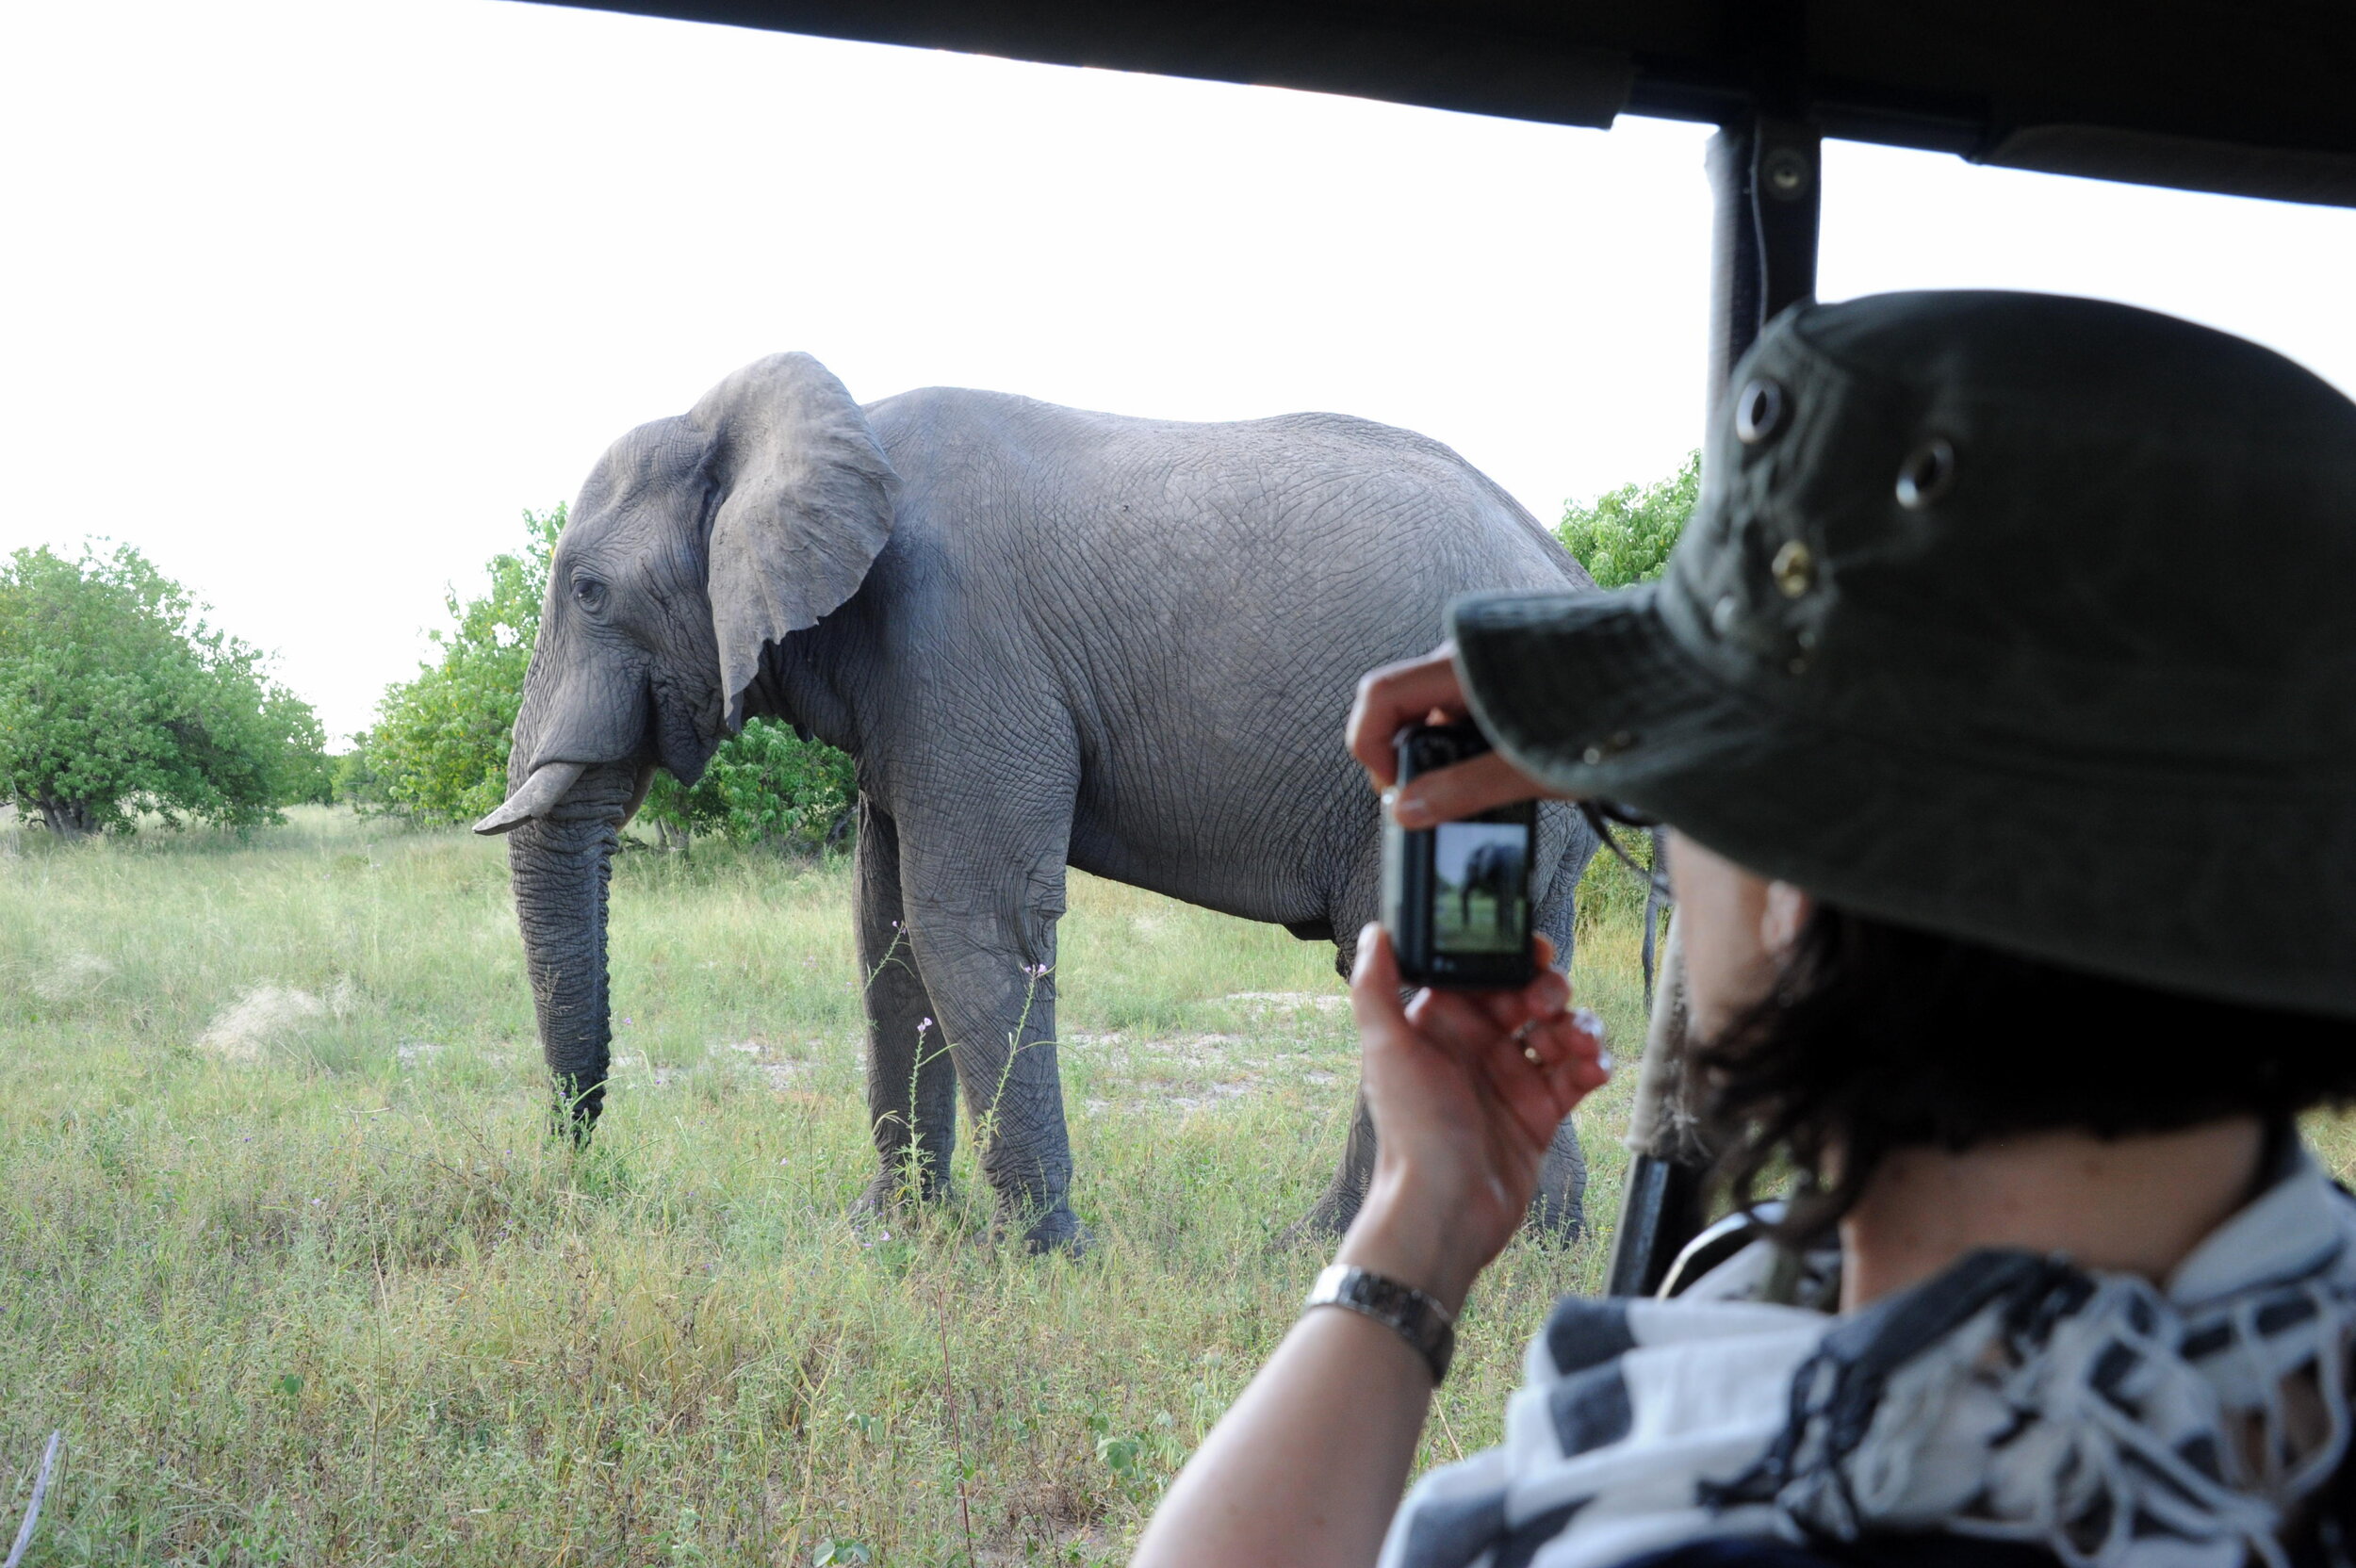 Elephant - susan taking photo of elephant.jpg